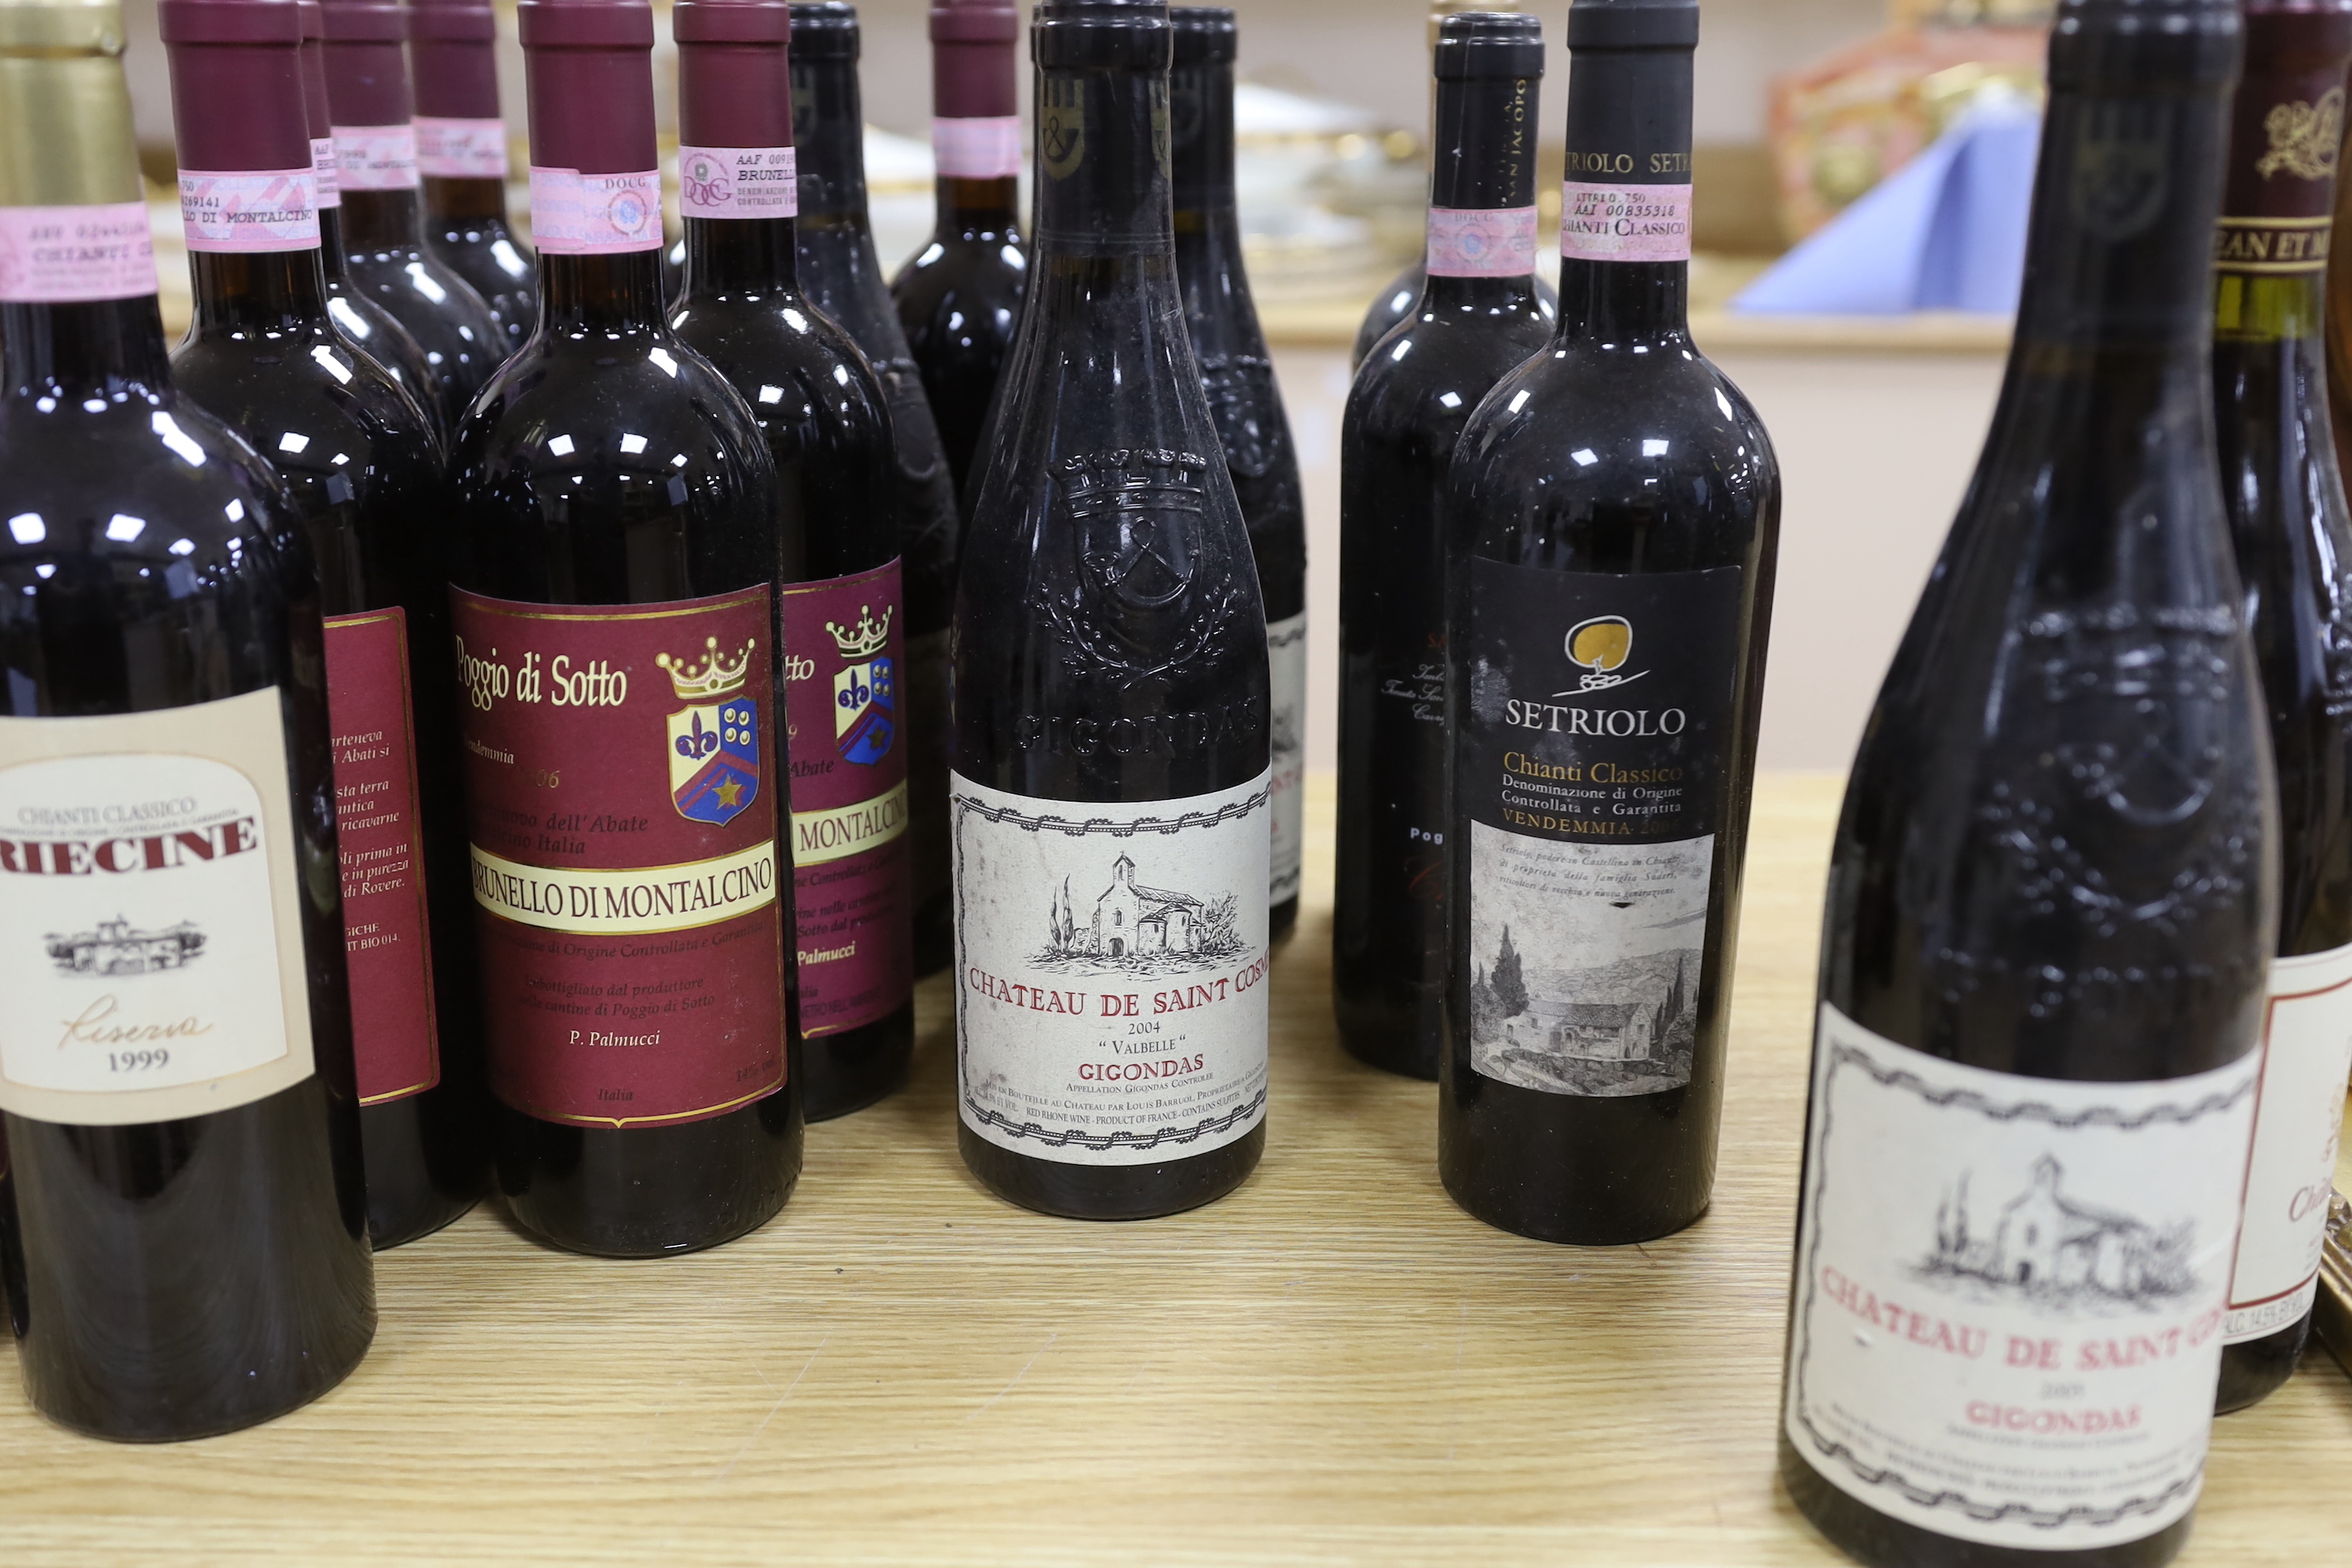 Twenty bottles of red wine including; Chateauneuf-du-Pape 2005, Chateau de Saint Cosme 2005, Chianti 1999, etc.